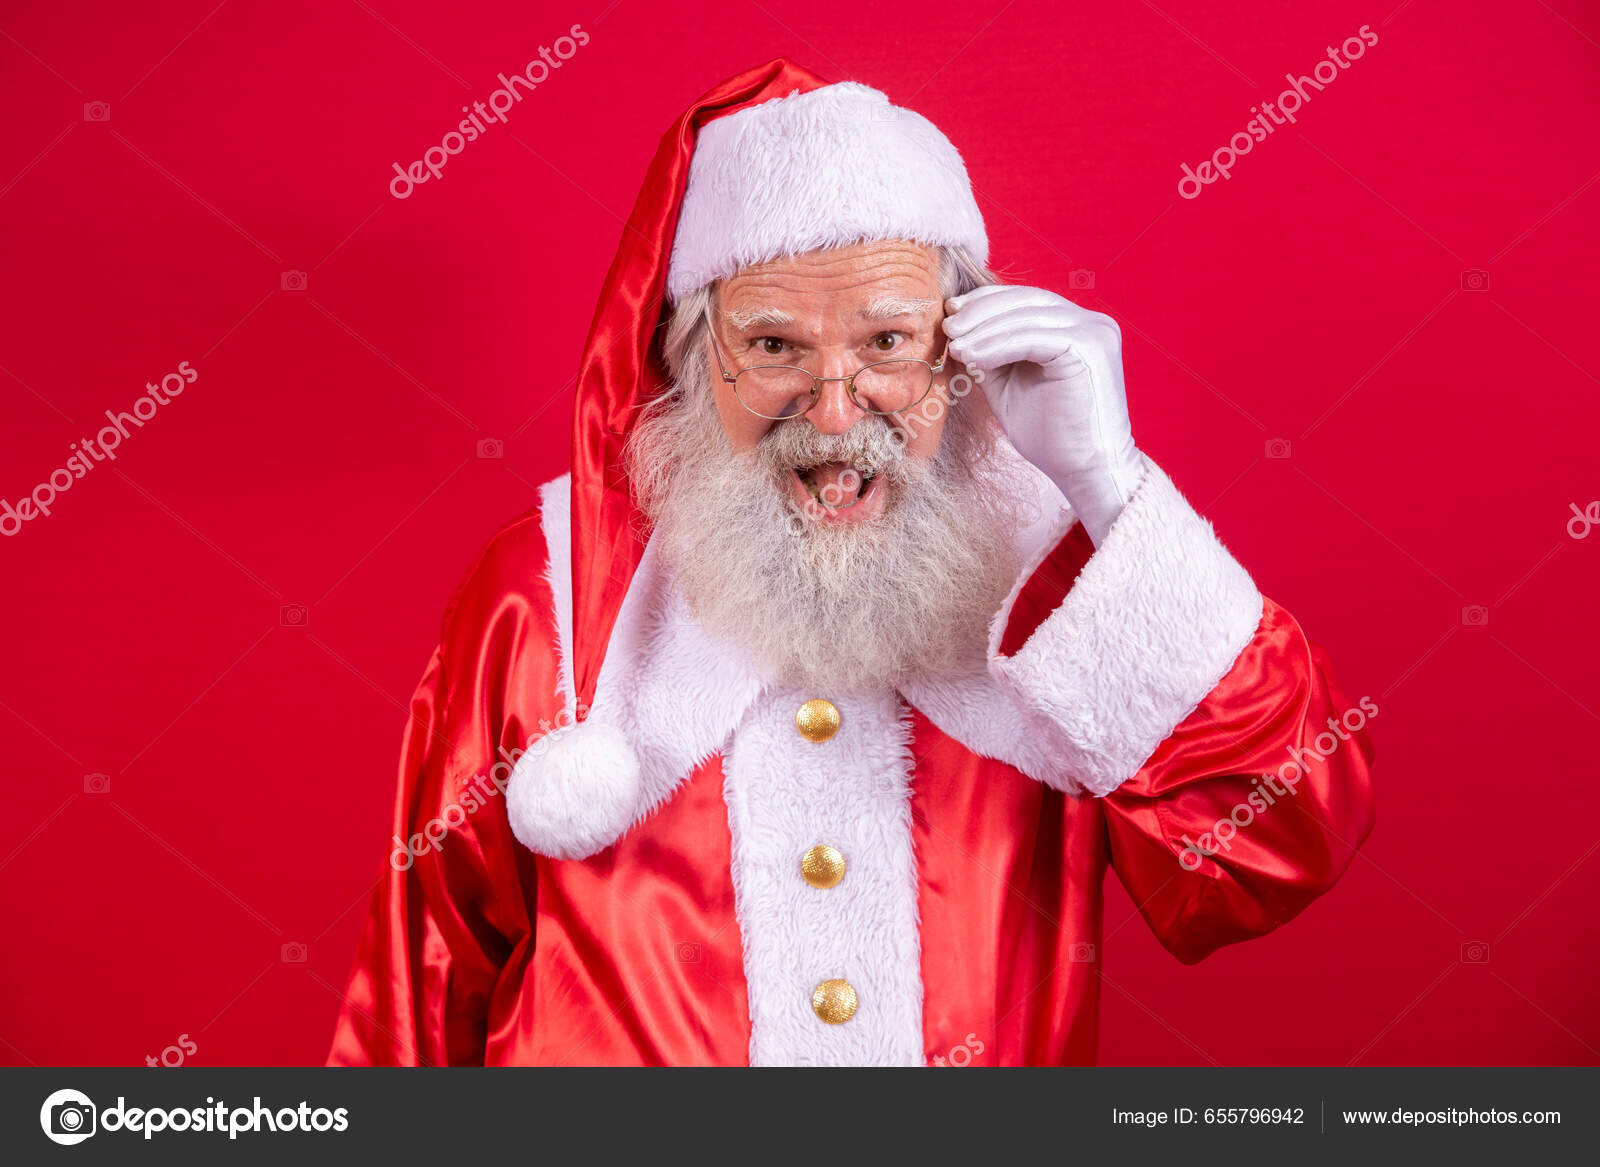 Fotos de Natal, Imagens de Natal sem royalties